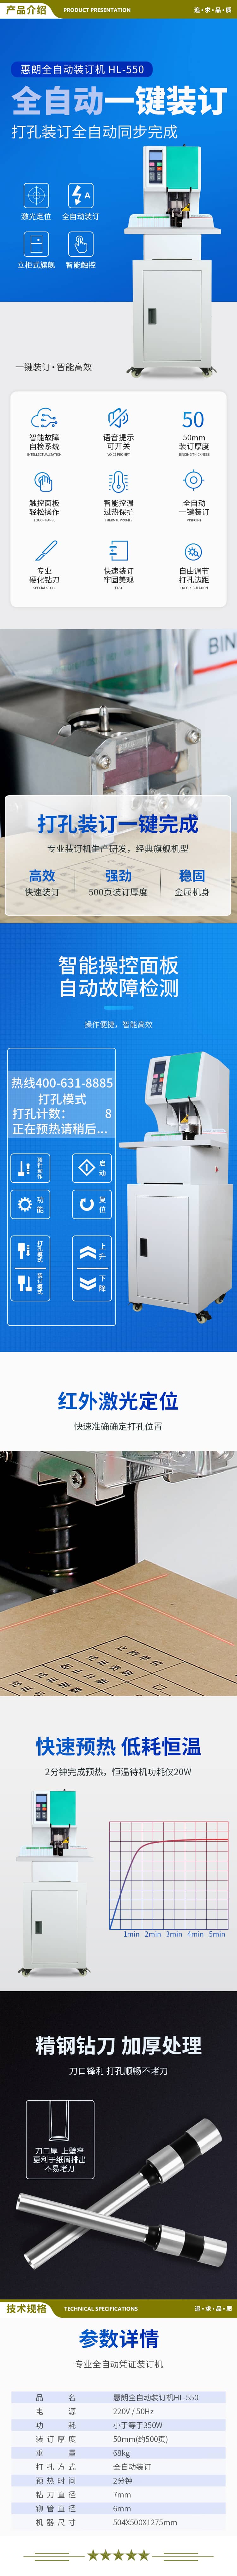 惠朗 huilang 550 全自动财务凭证装订机 50mm 柜式液晶 2.jpg